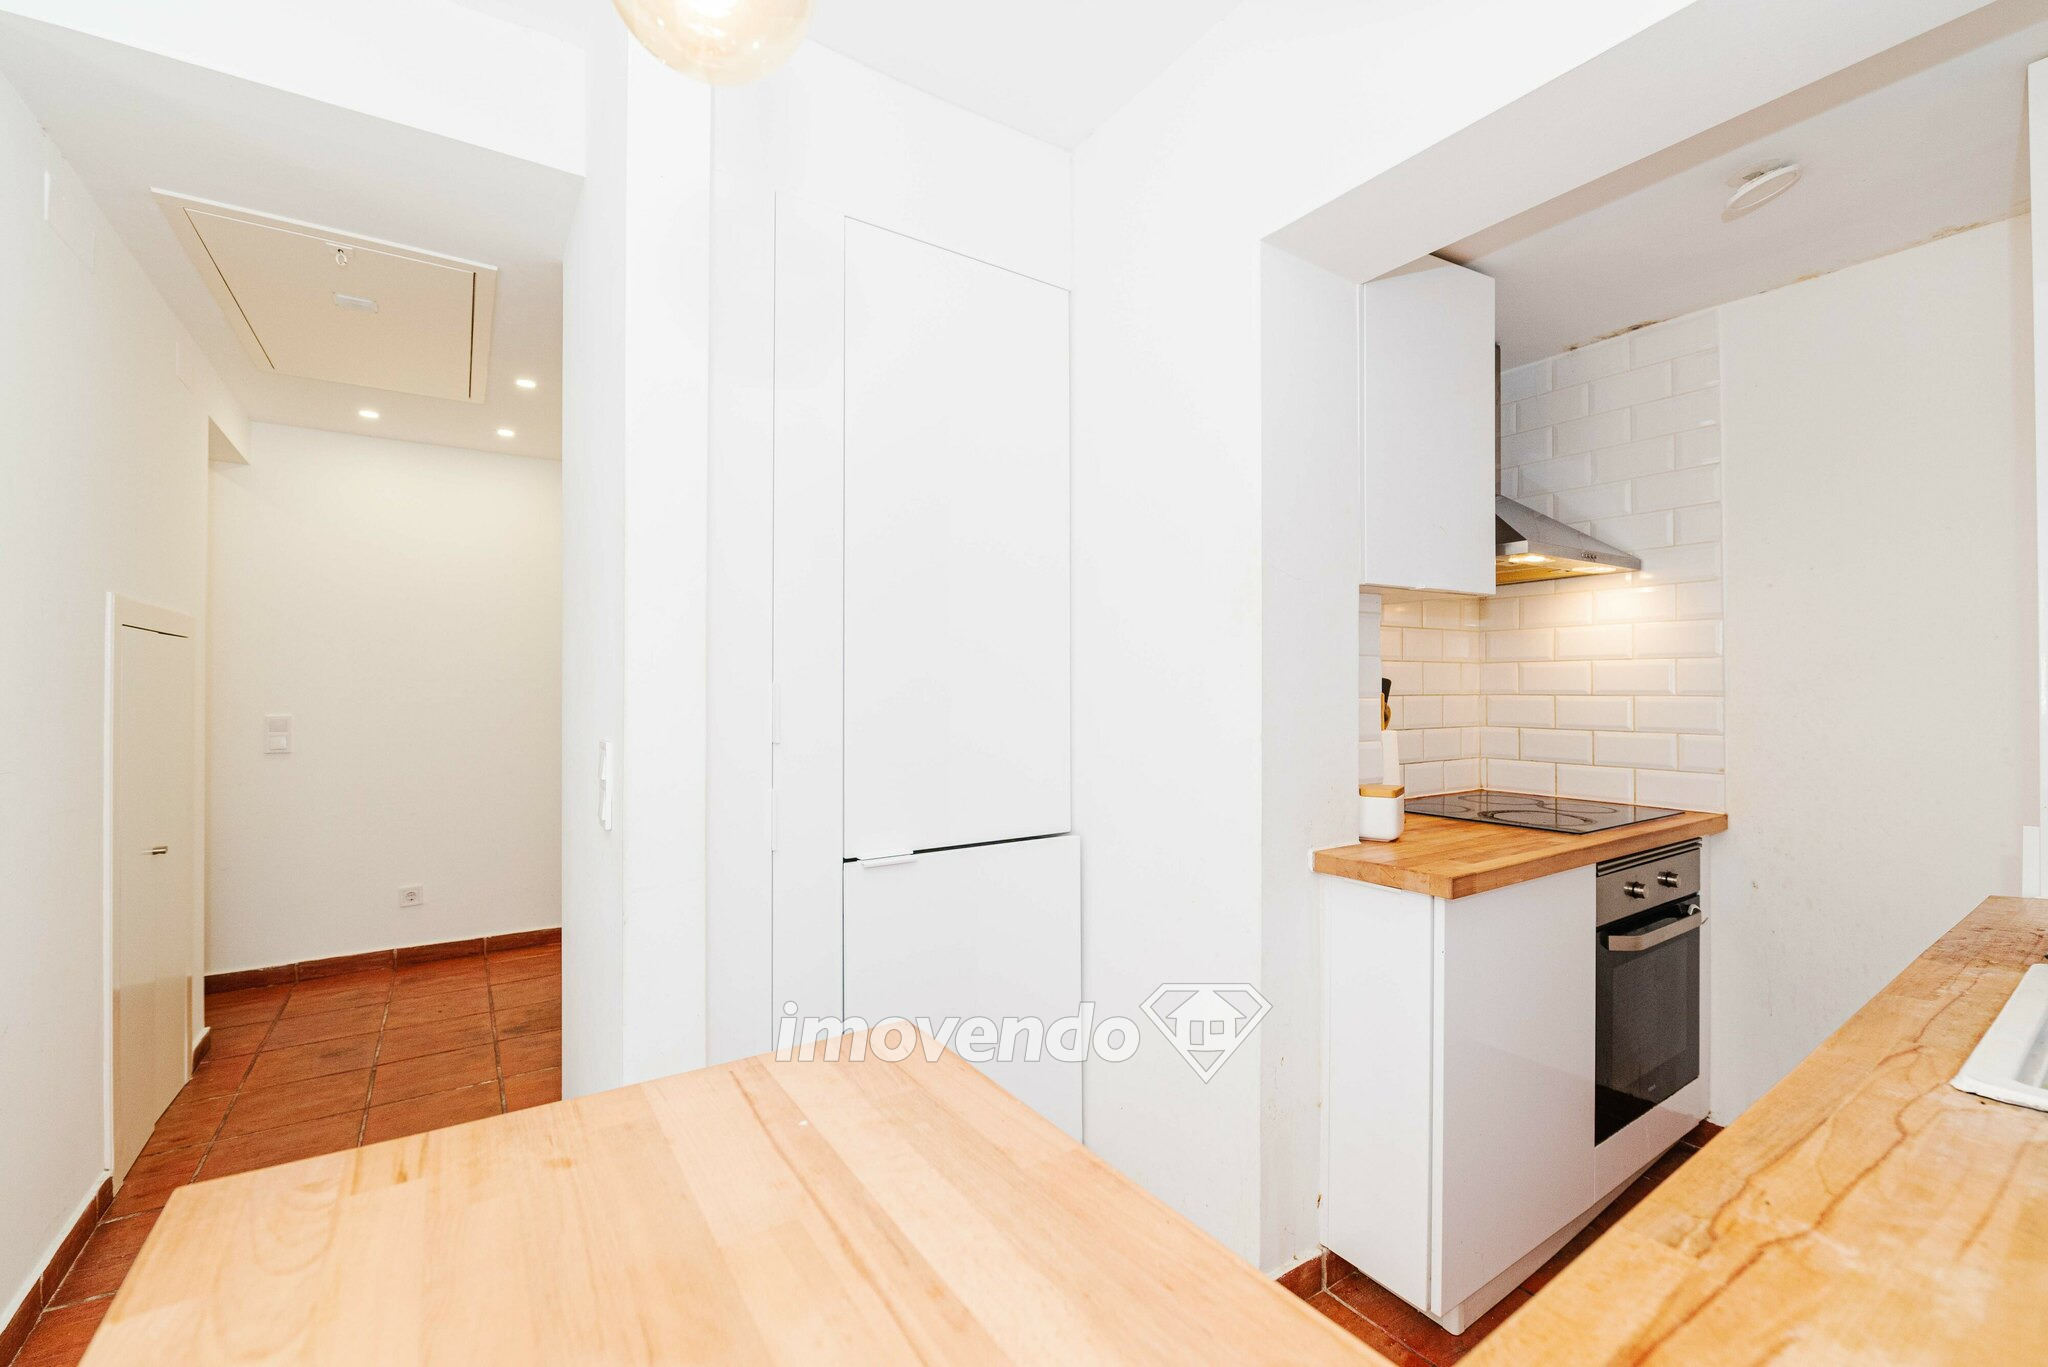 Apartamento T2 remodelado, com cozinha equipada, no Bairro Grandella